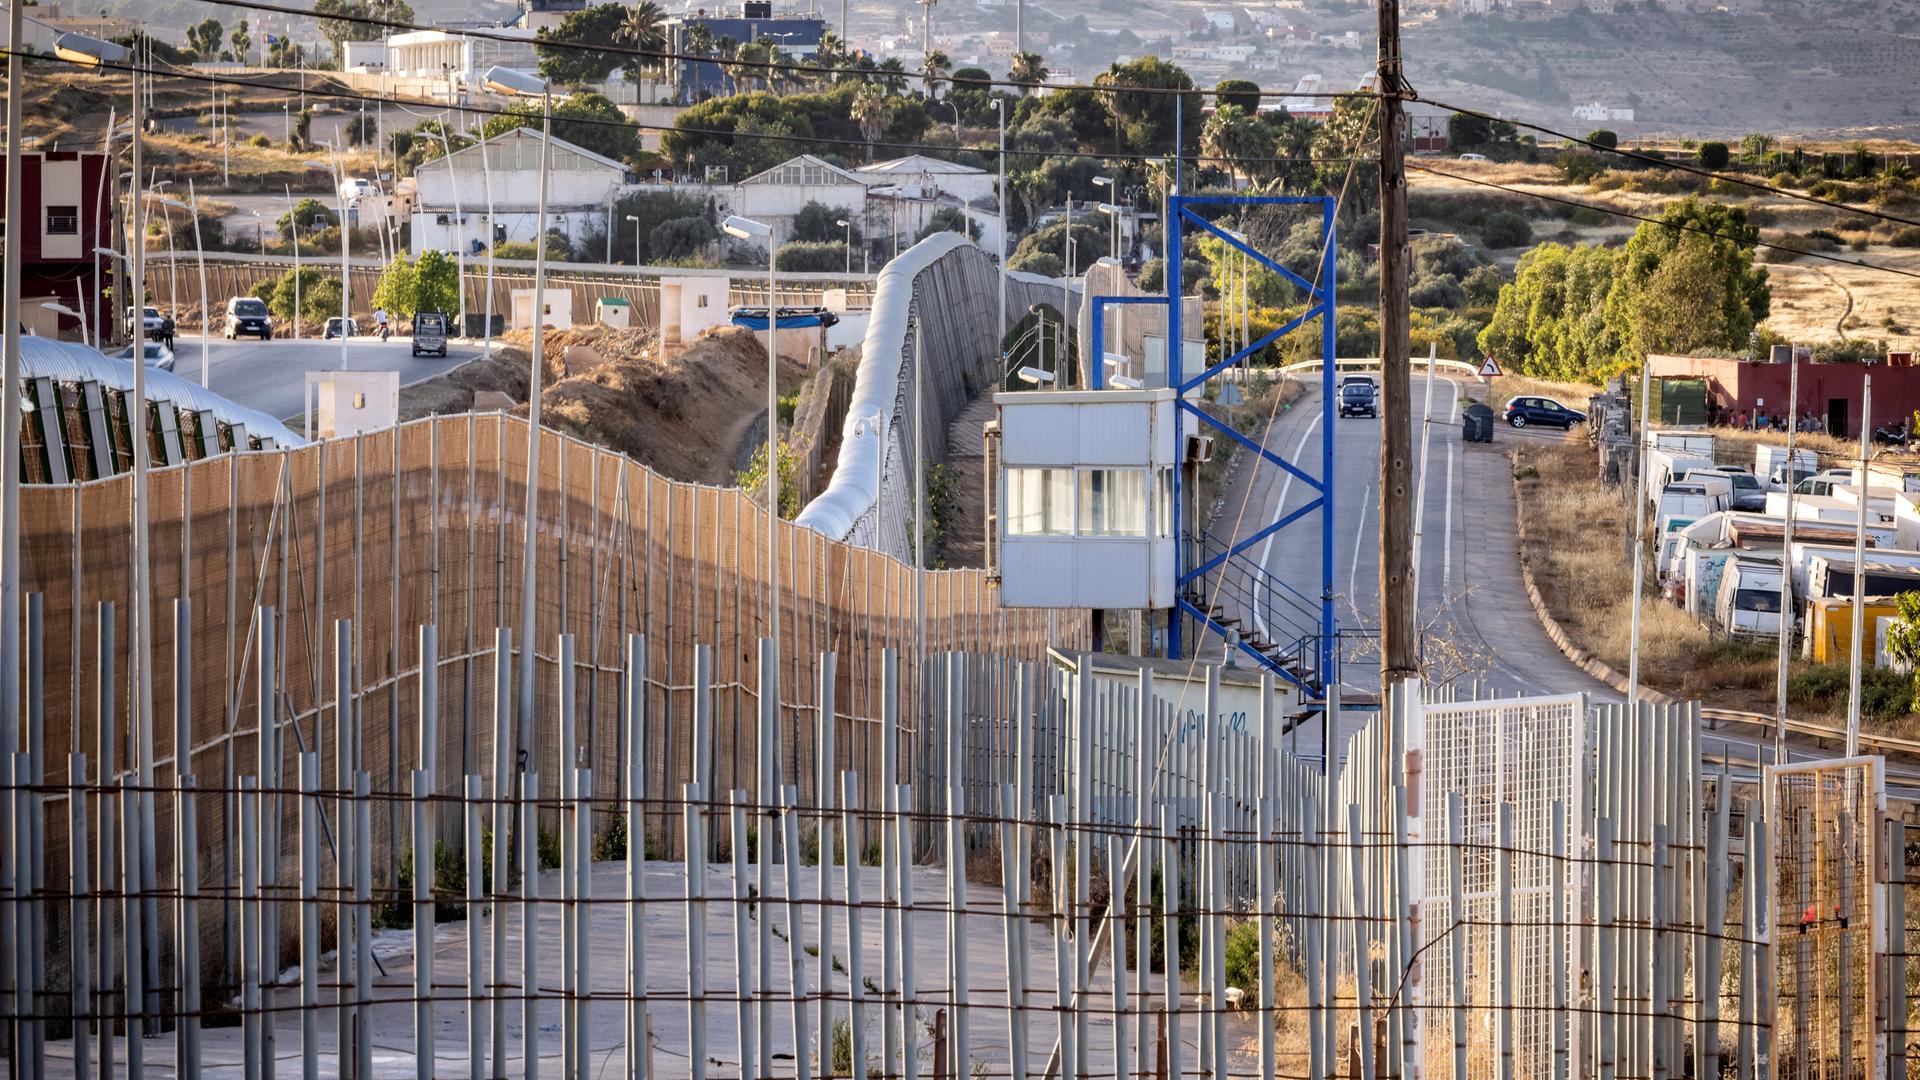 Blick auf hohe Zäune und Grenzbefestigungen zwischen Marokko und der spanischen Exklave Melilla